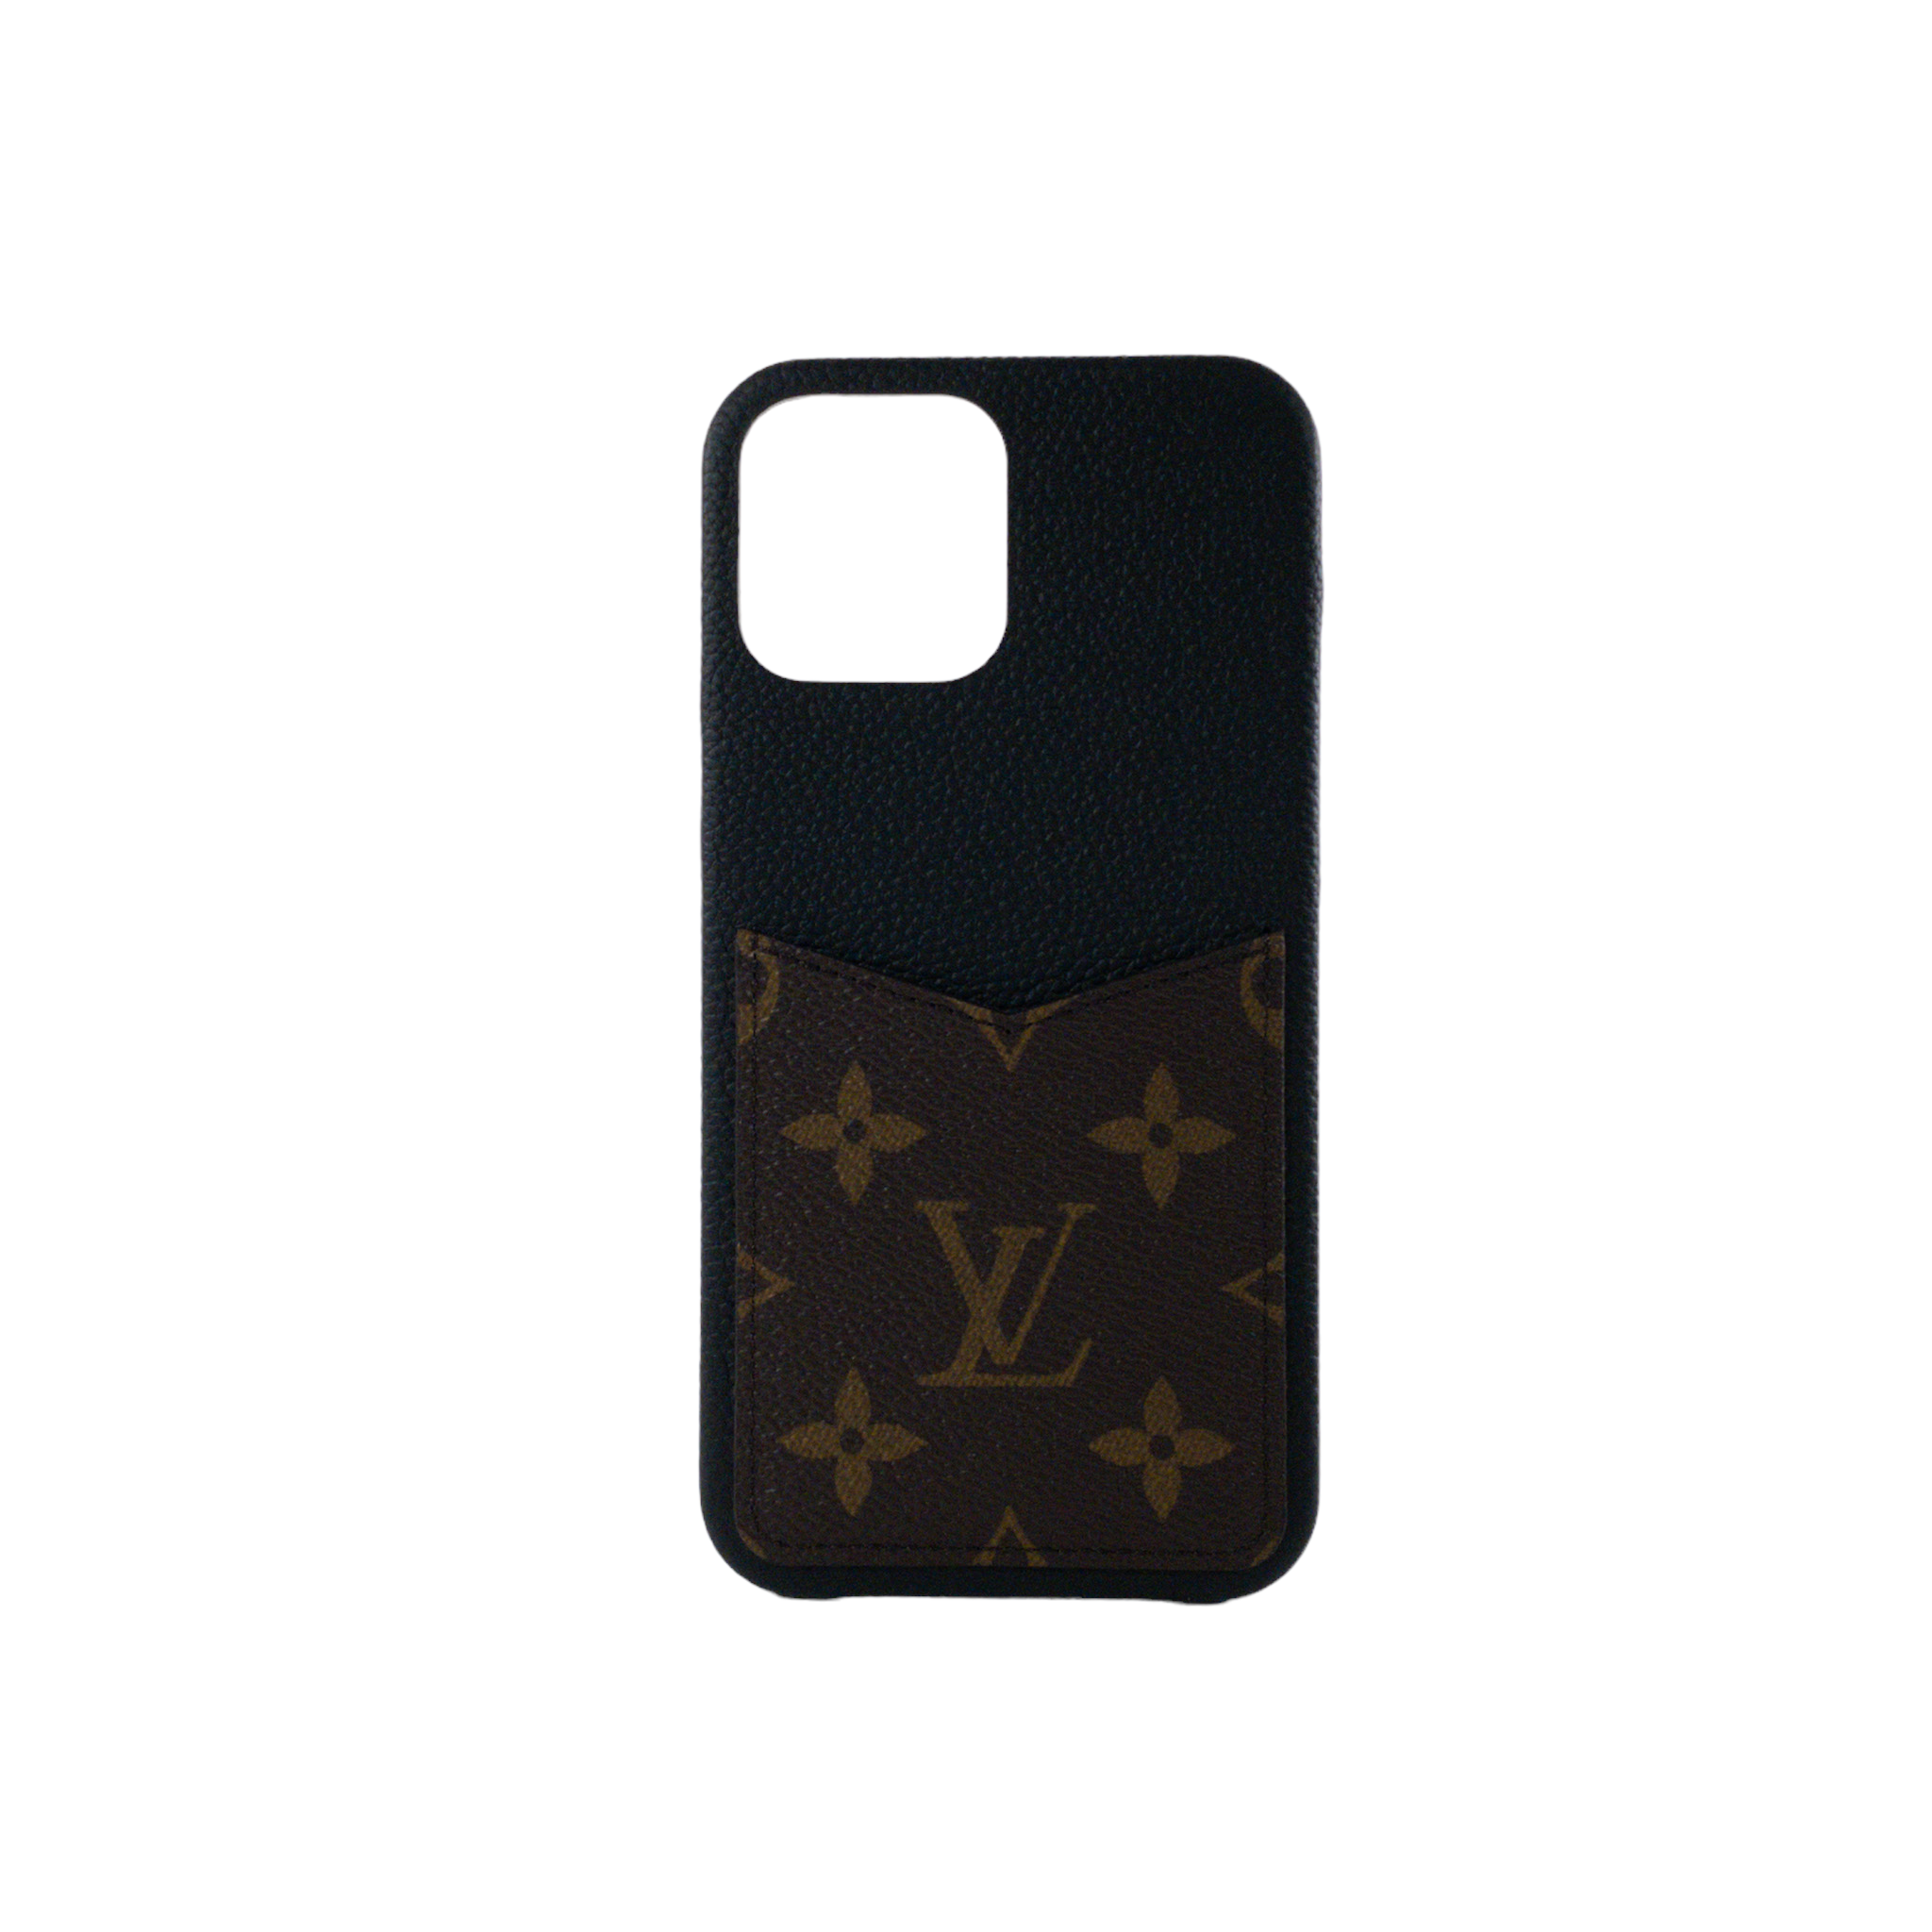 Case for iPhone 12 - Louis Vuitton Black